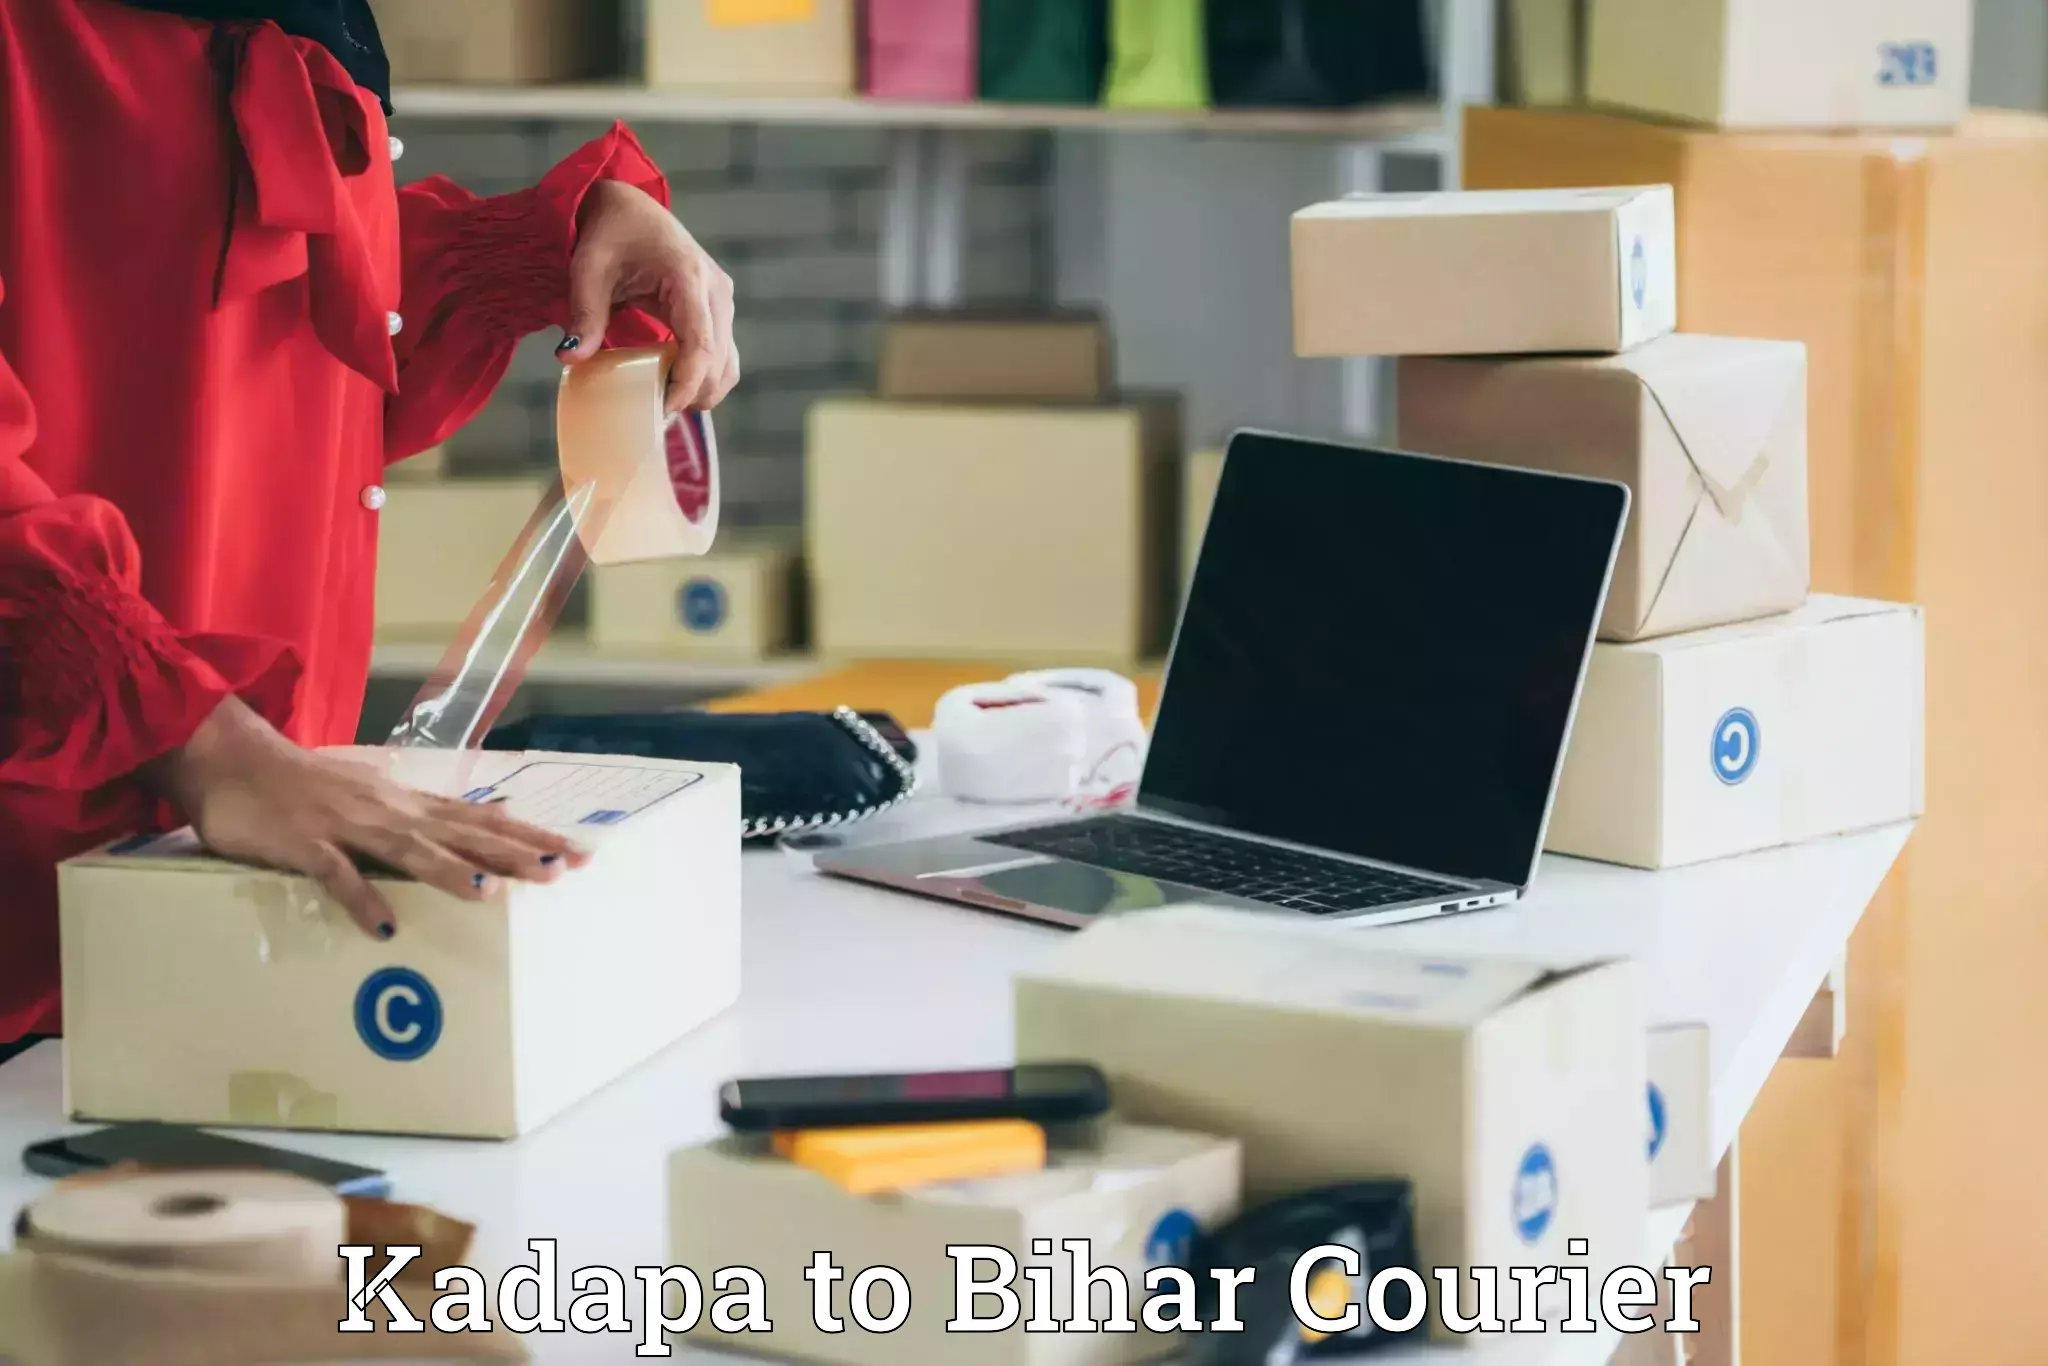 Courier service comparison Kadapa to Lauria Nandangarh